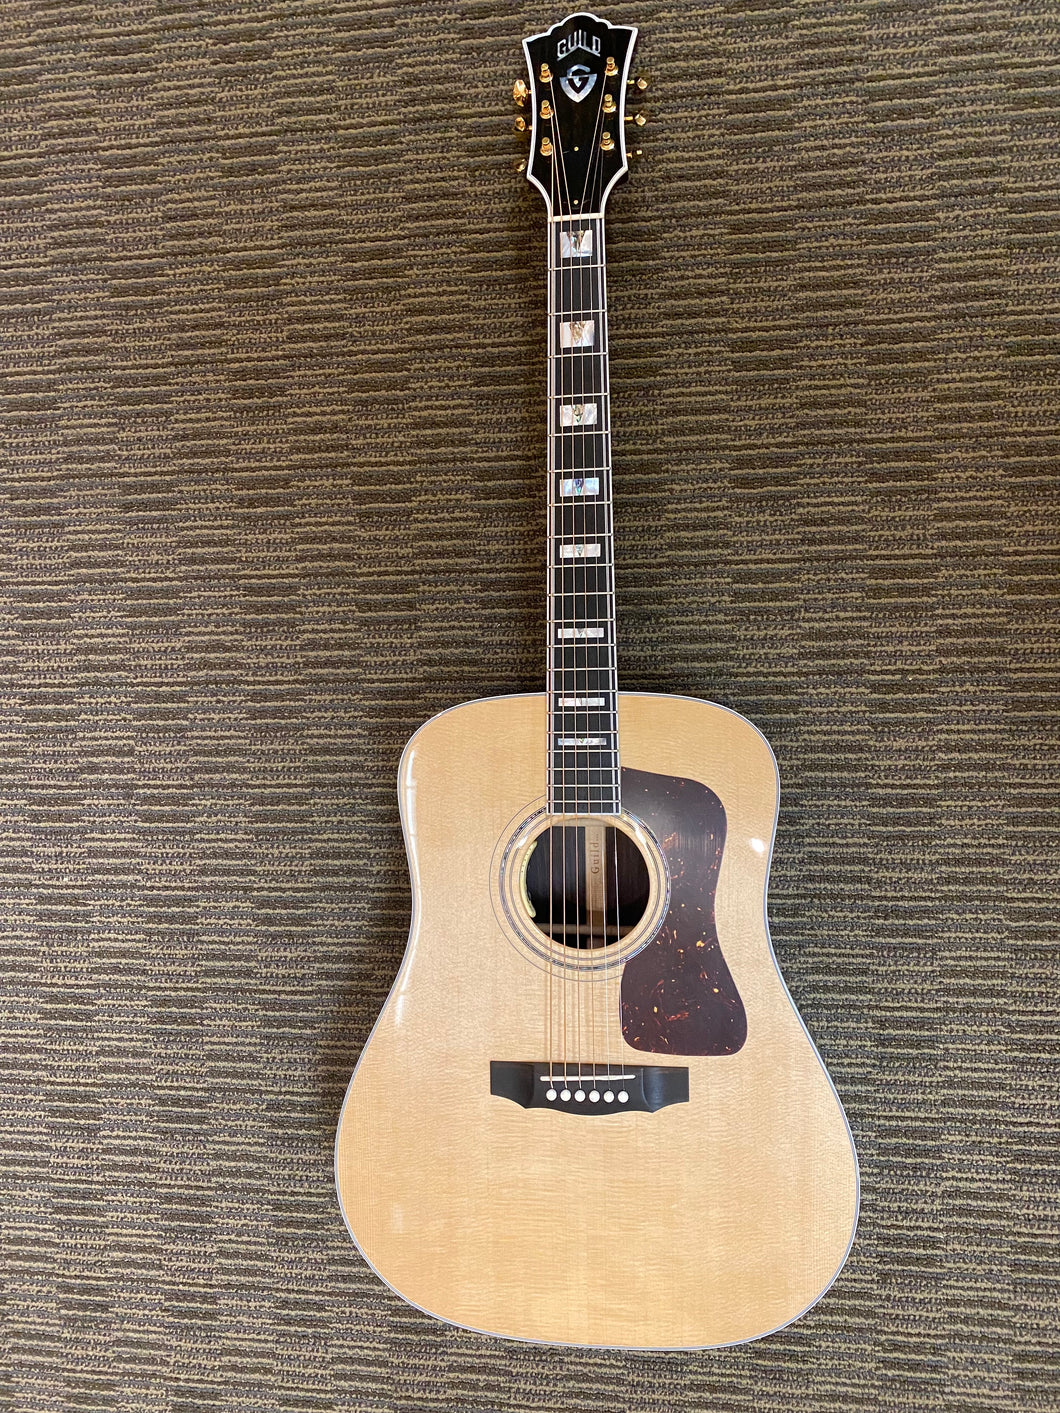 Guild USA D-55E acoustic guitar